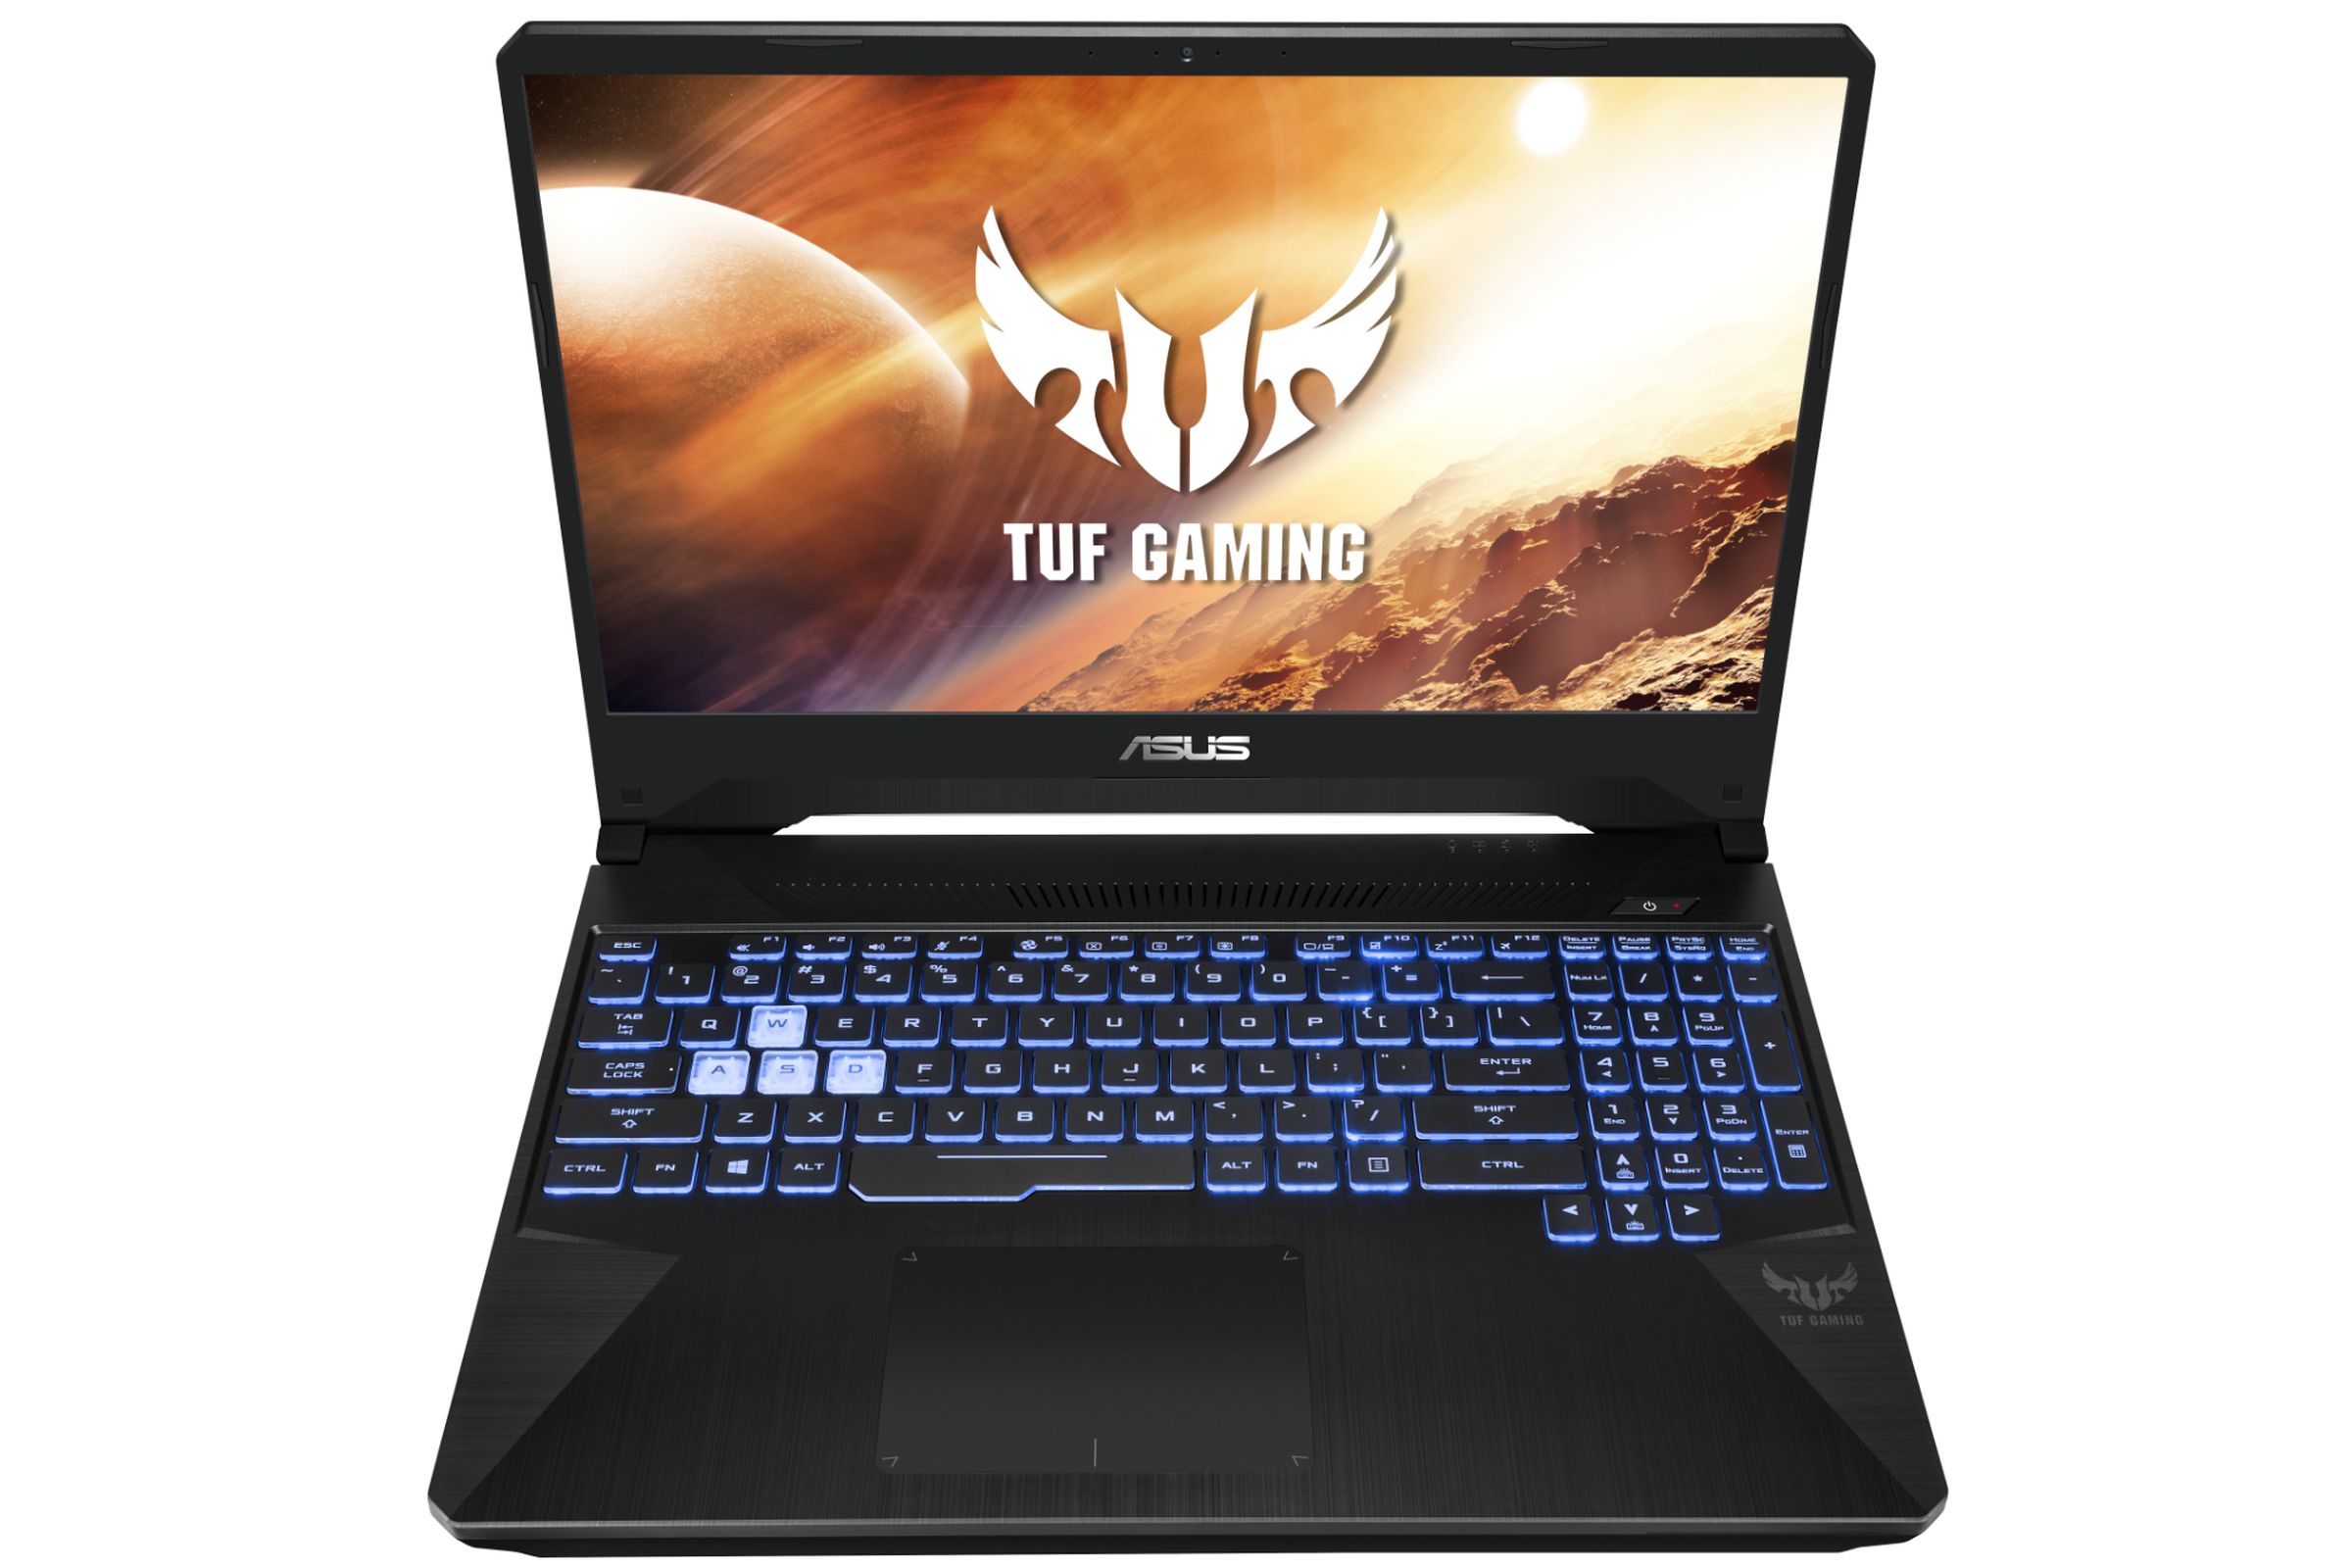 Asus’ new TUF gaming laptop